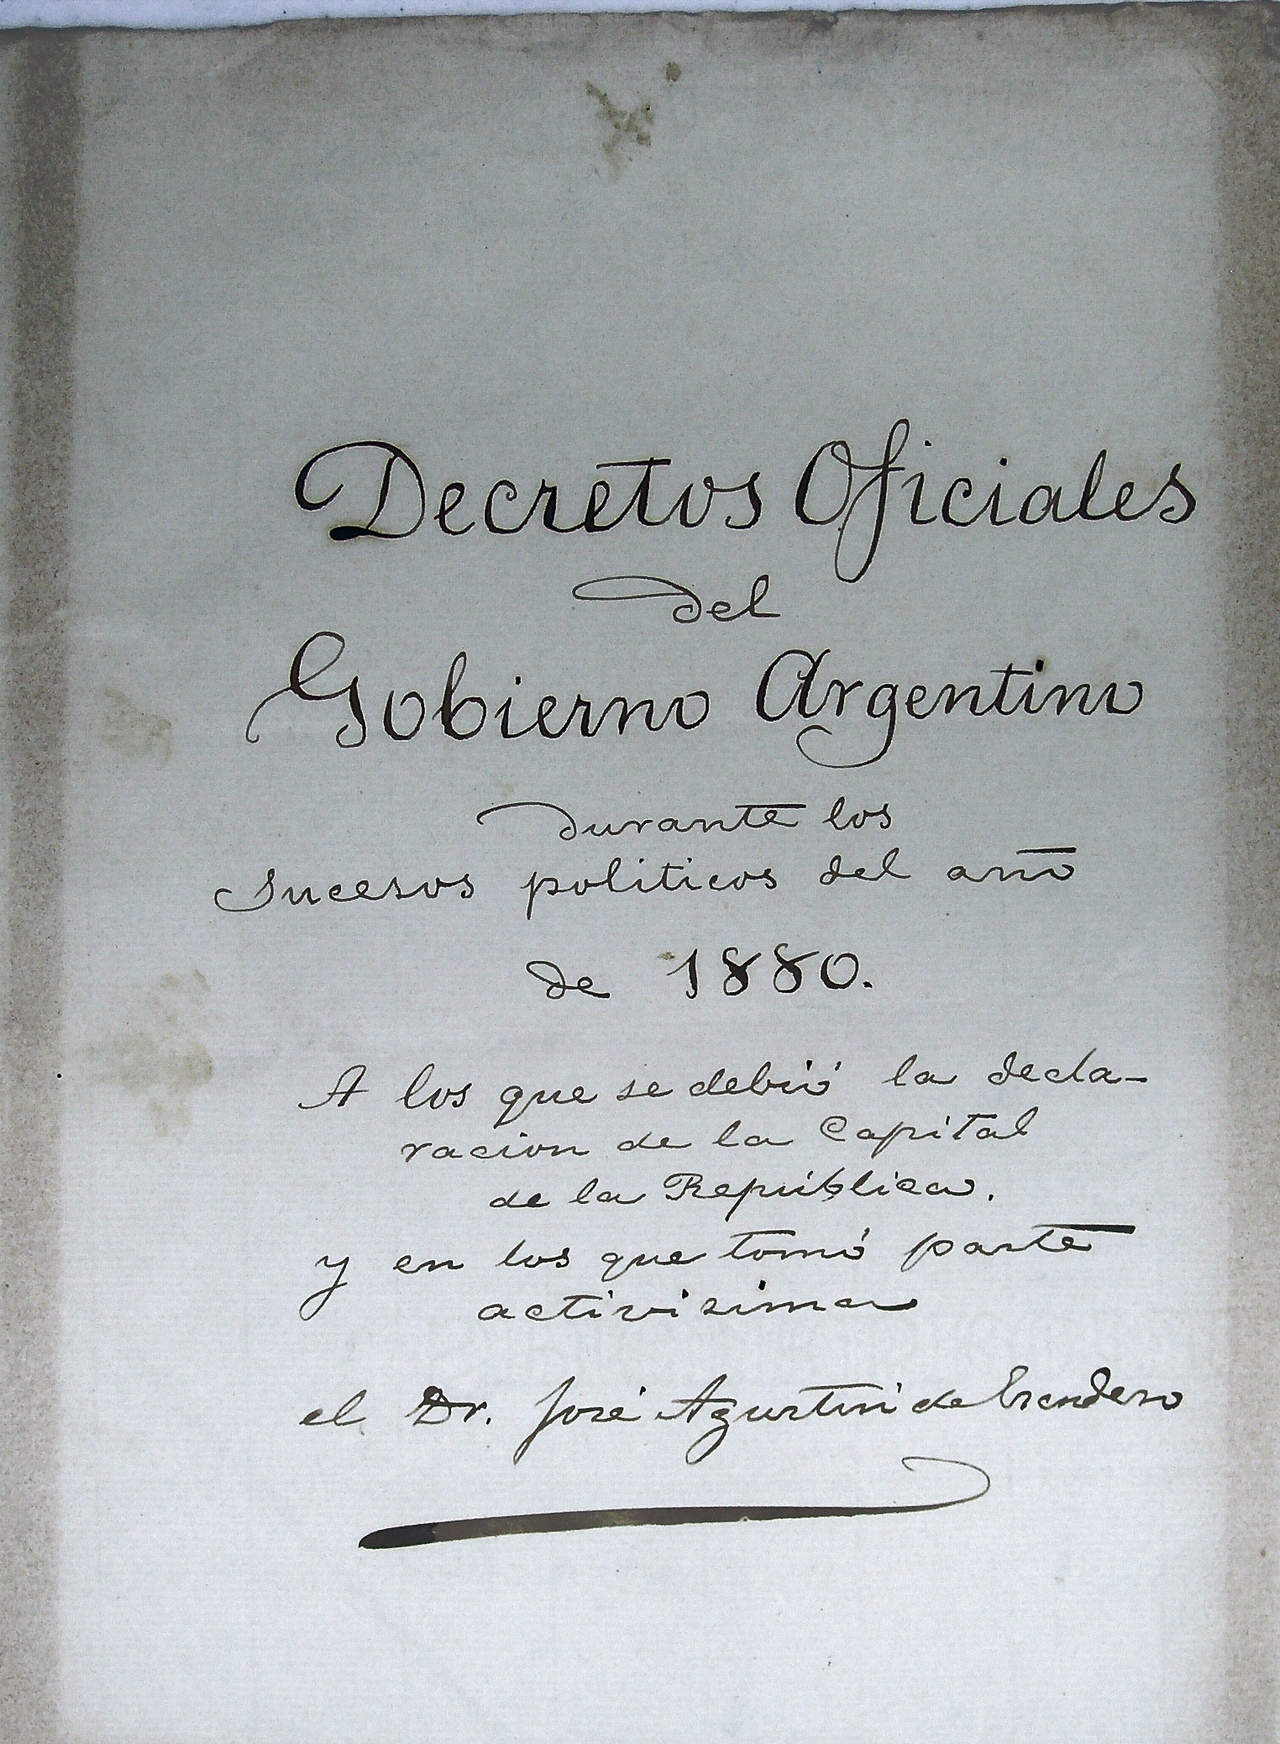 Decretos Oficiales del Gobierno Argentino durante los sucesos politicos de 1880.